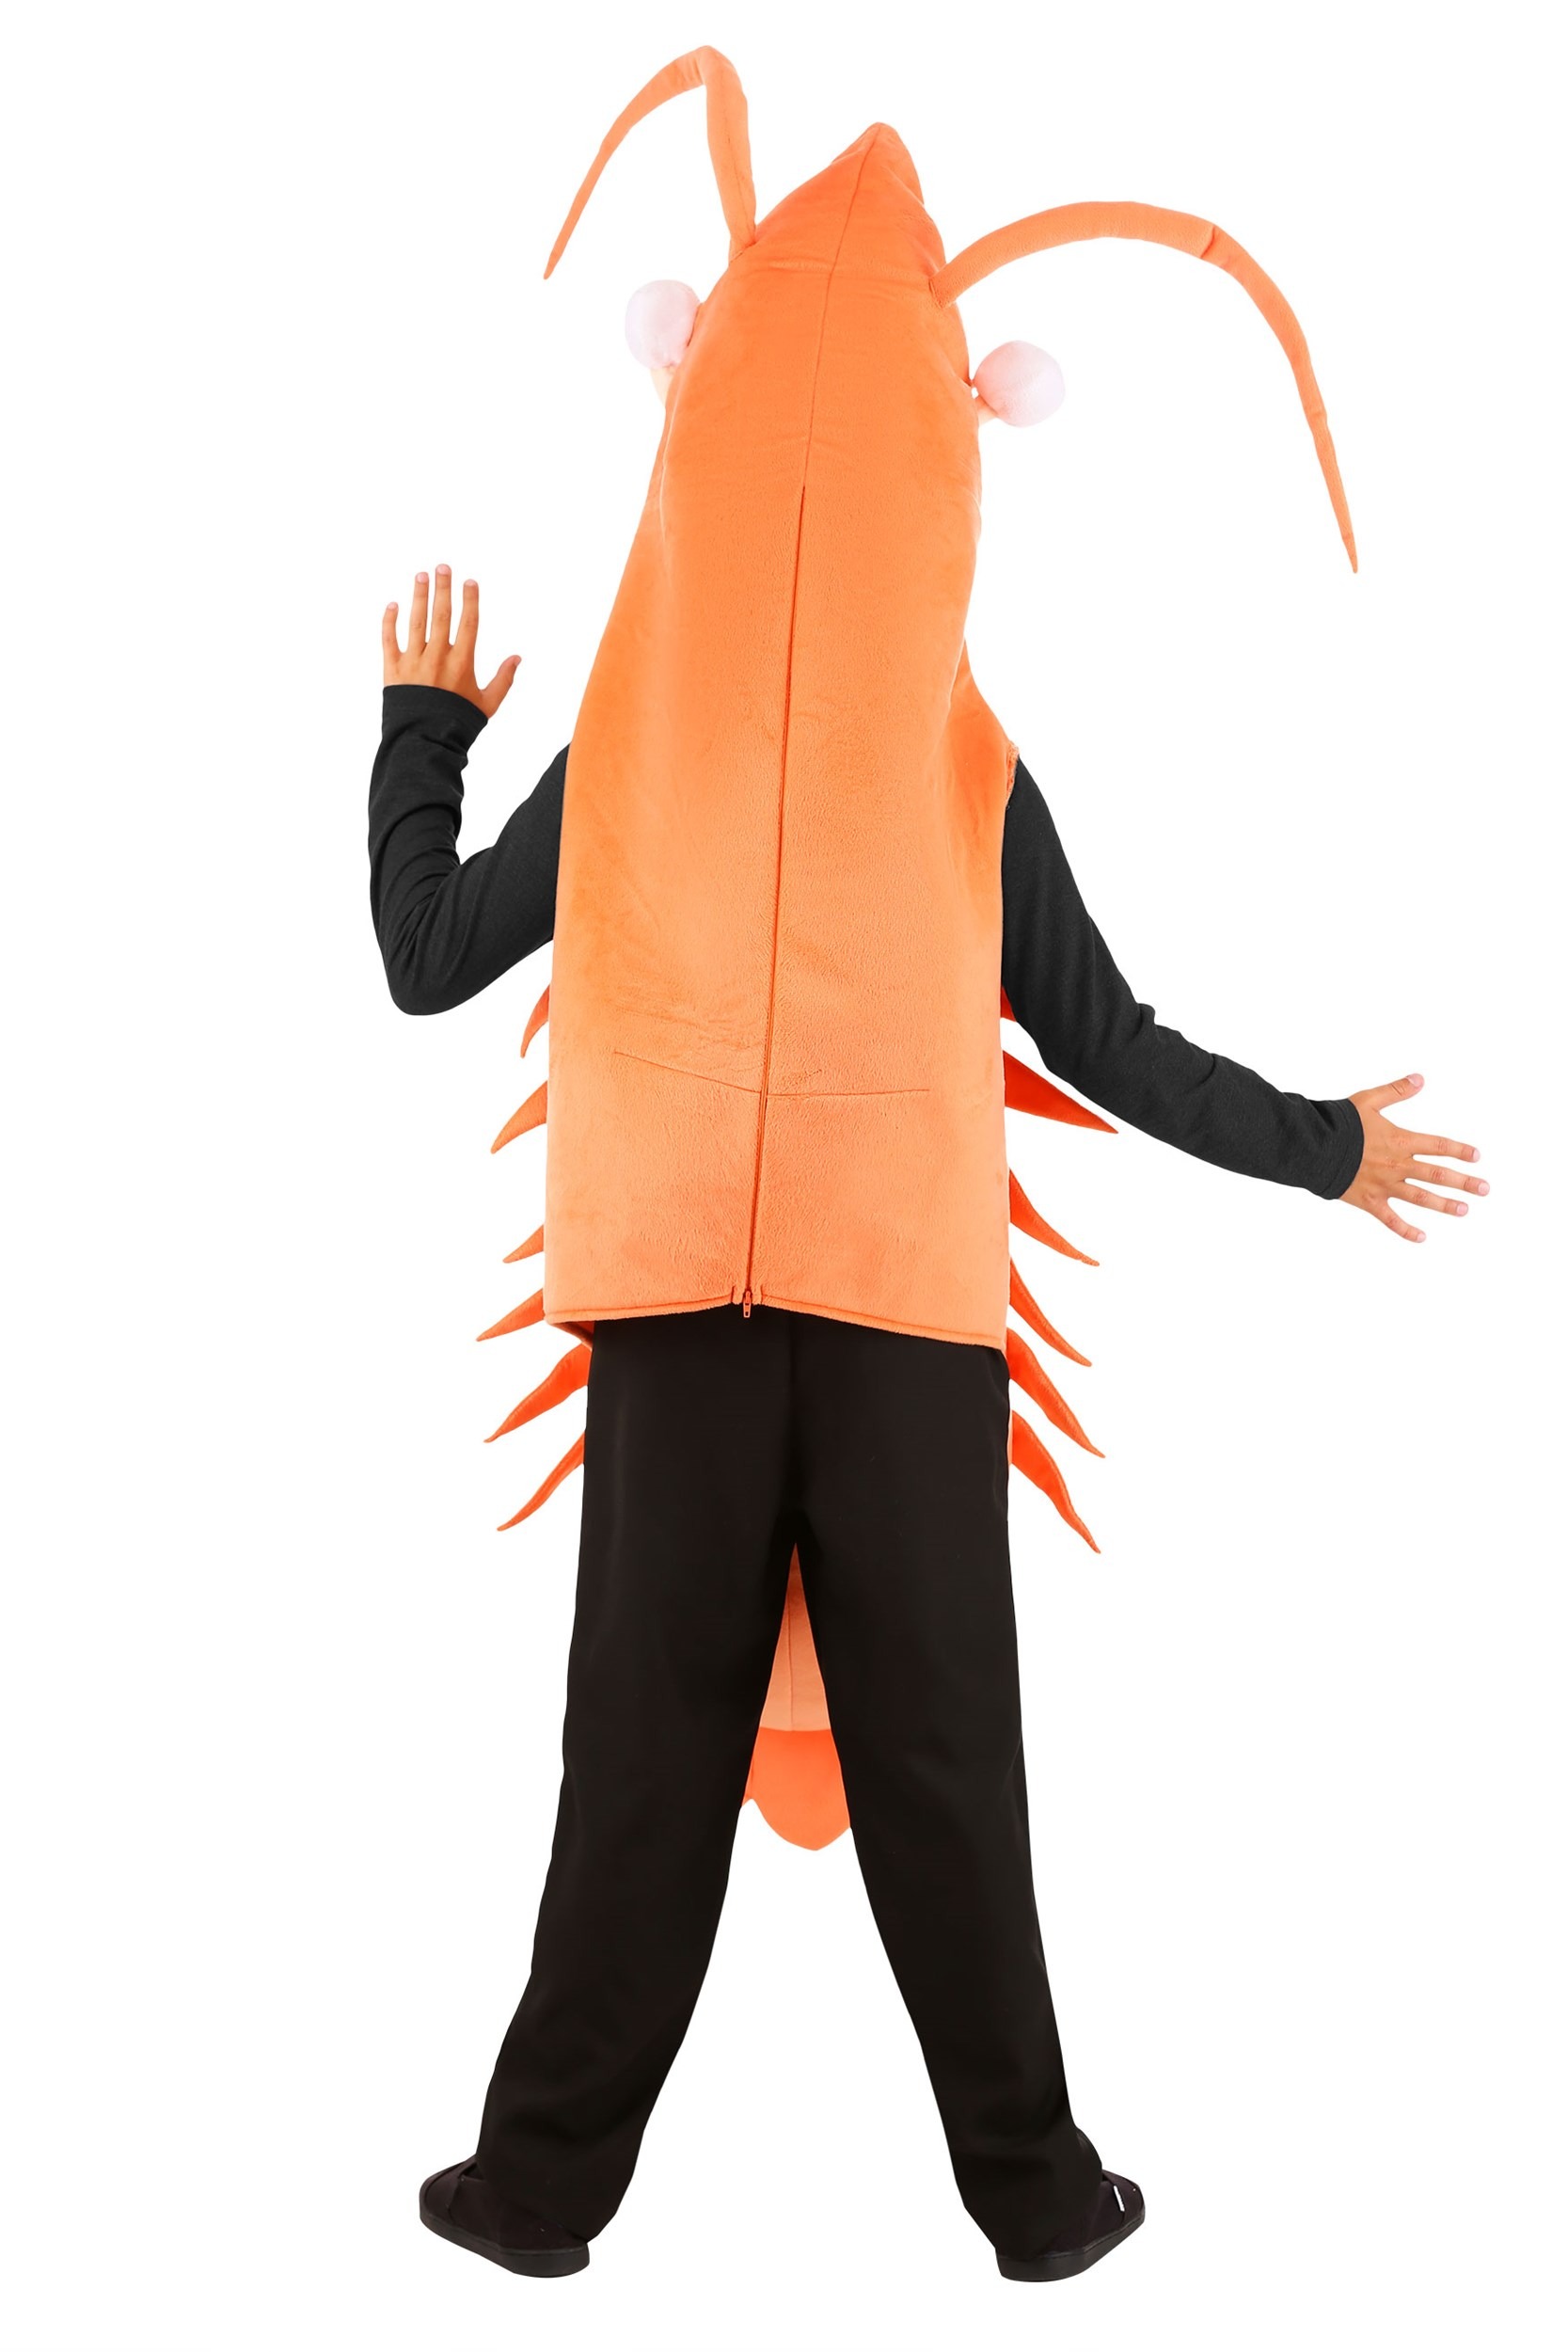 Shrimp Costume Kids